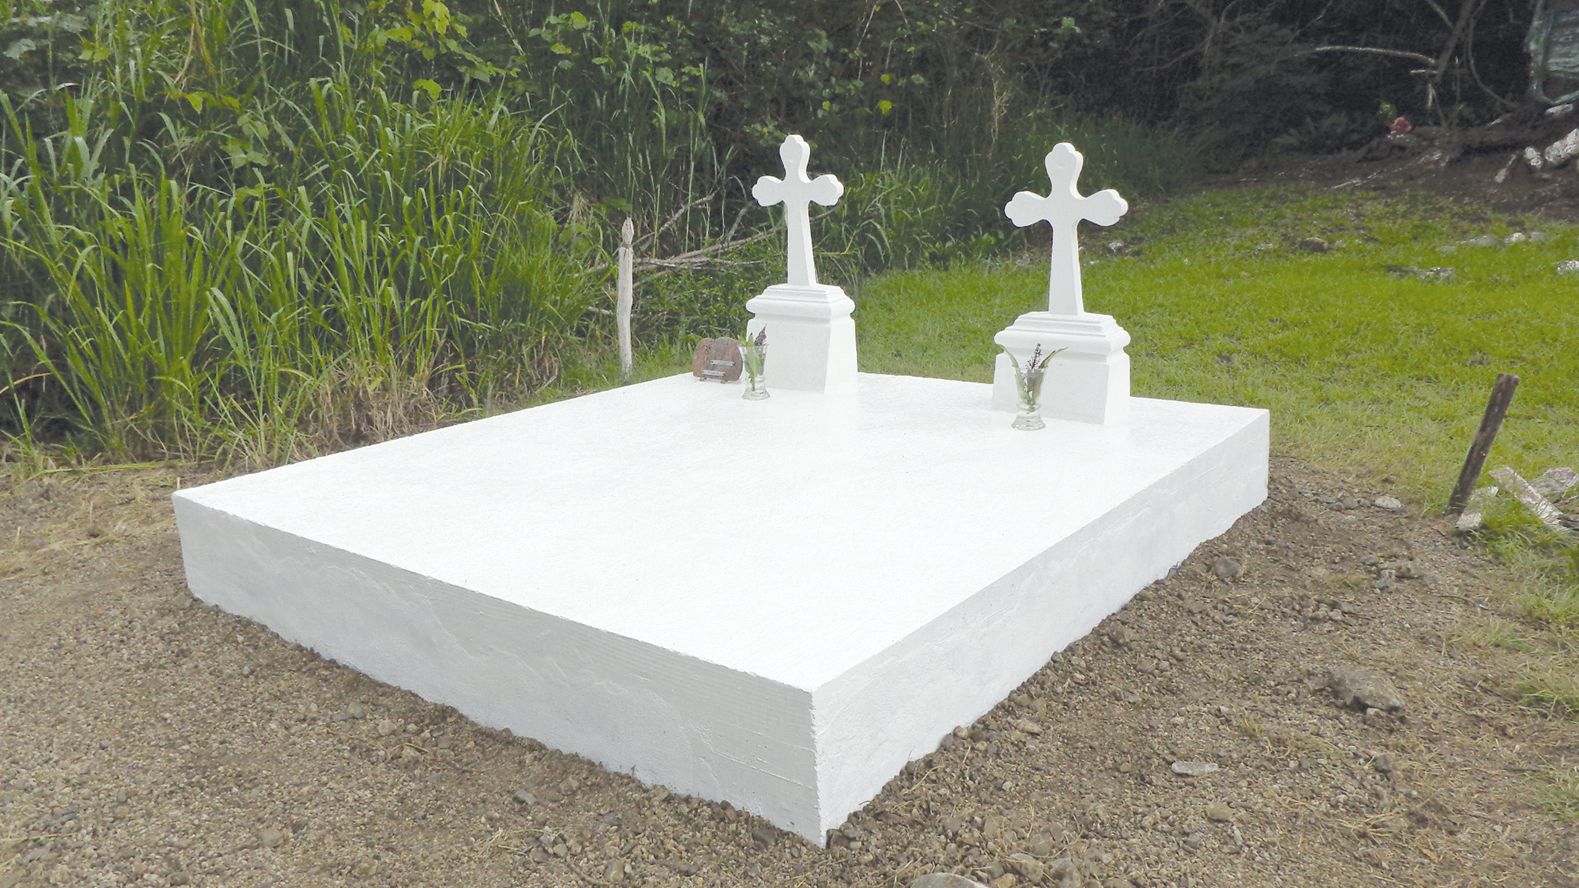 Les militaires ont embelli la tombe d’un ancien combattant de la guerre  14-18 au cimetière de la tribu.